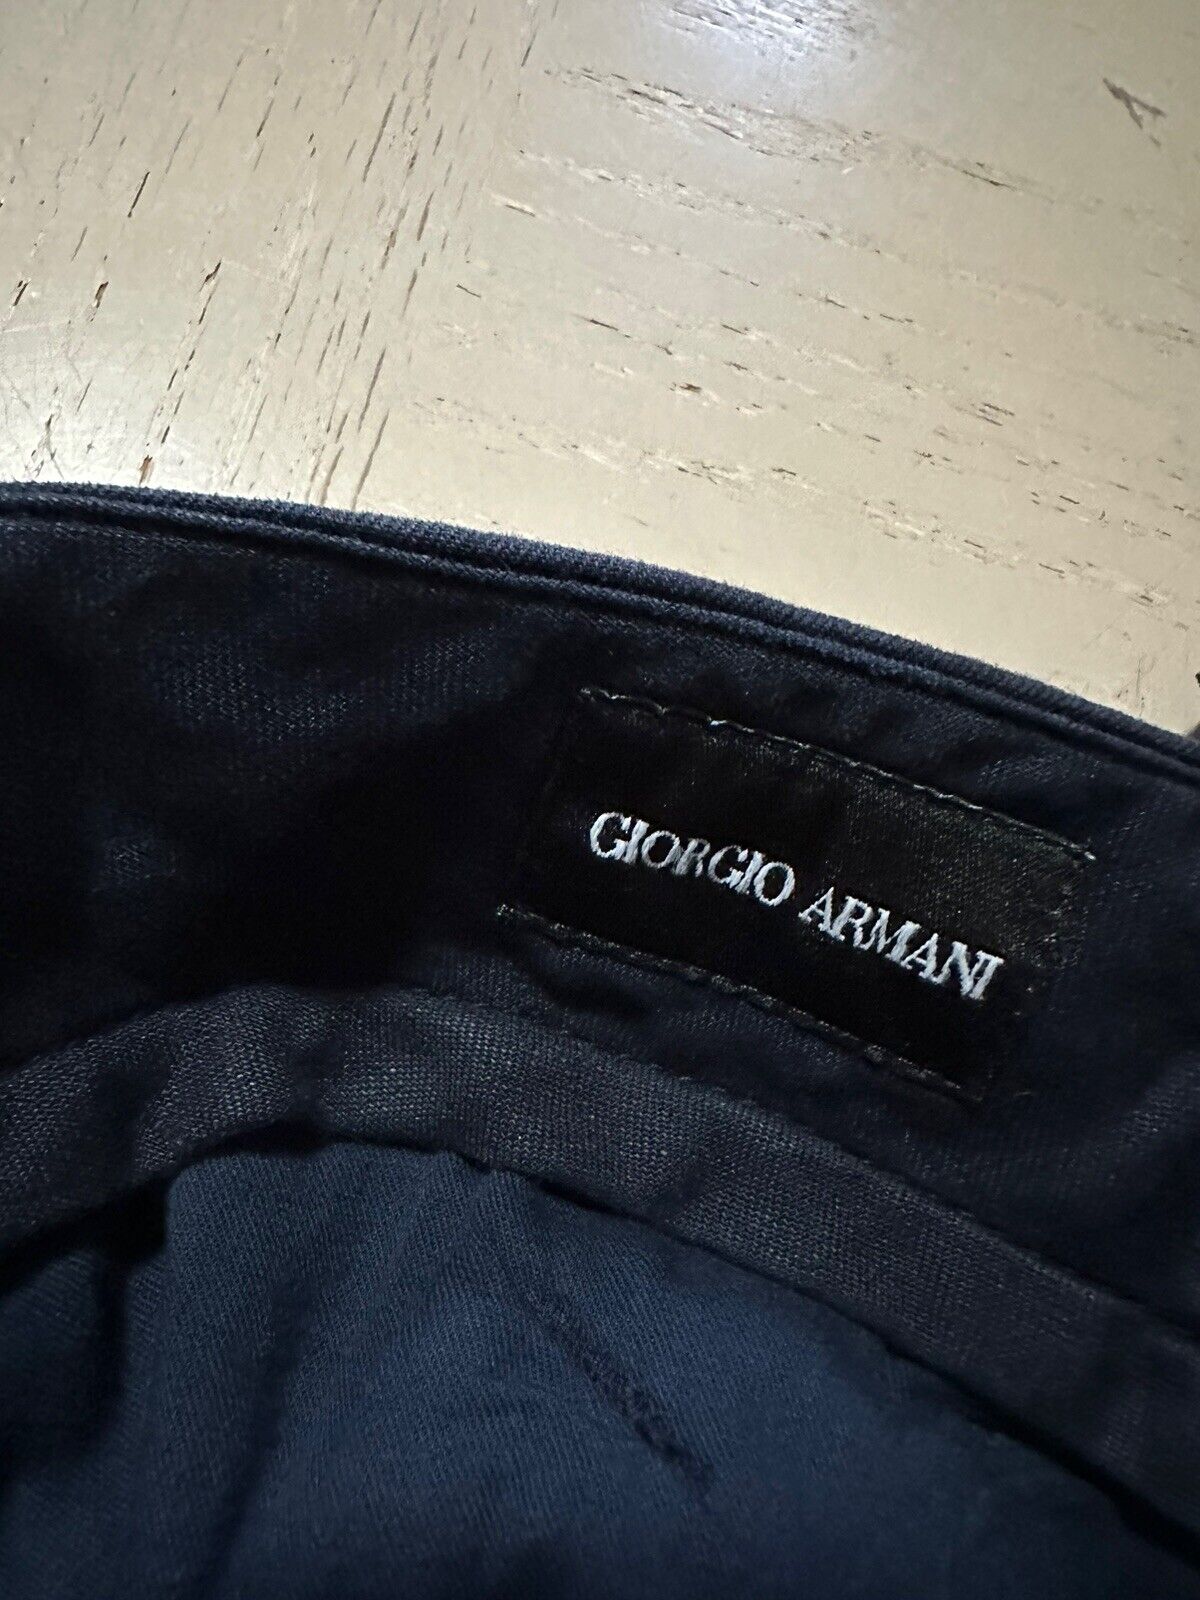 NWT $875 Giorgio Armani Men Linen/Cotton Jogging Cargo Pants Navy 36 US/52 Eu